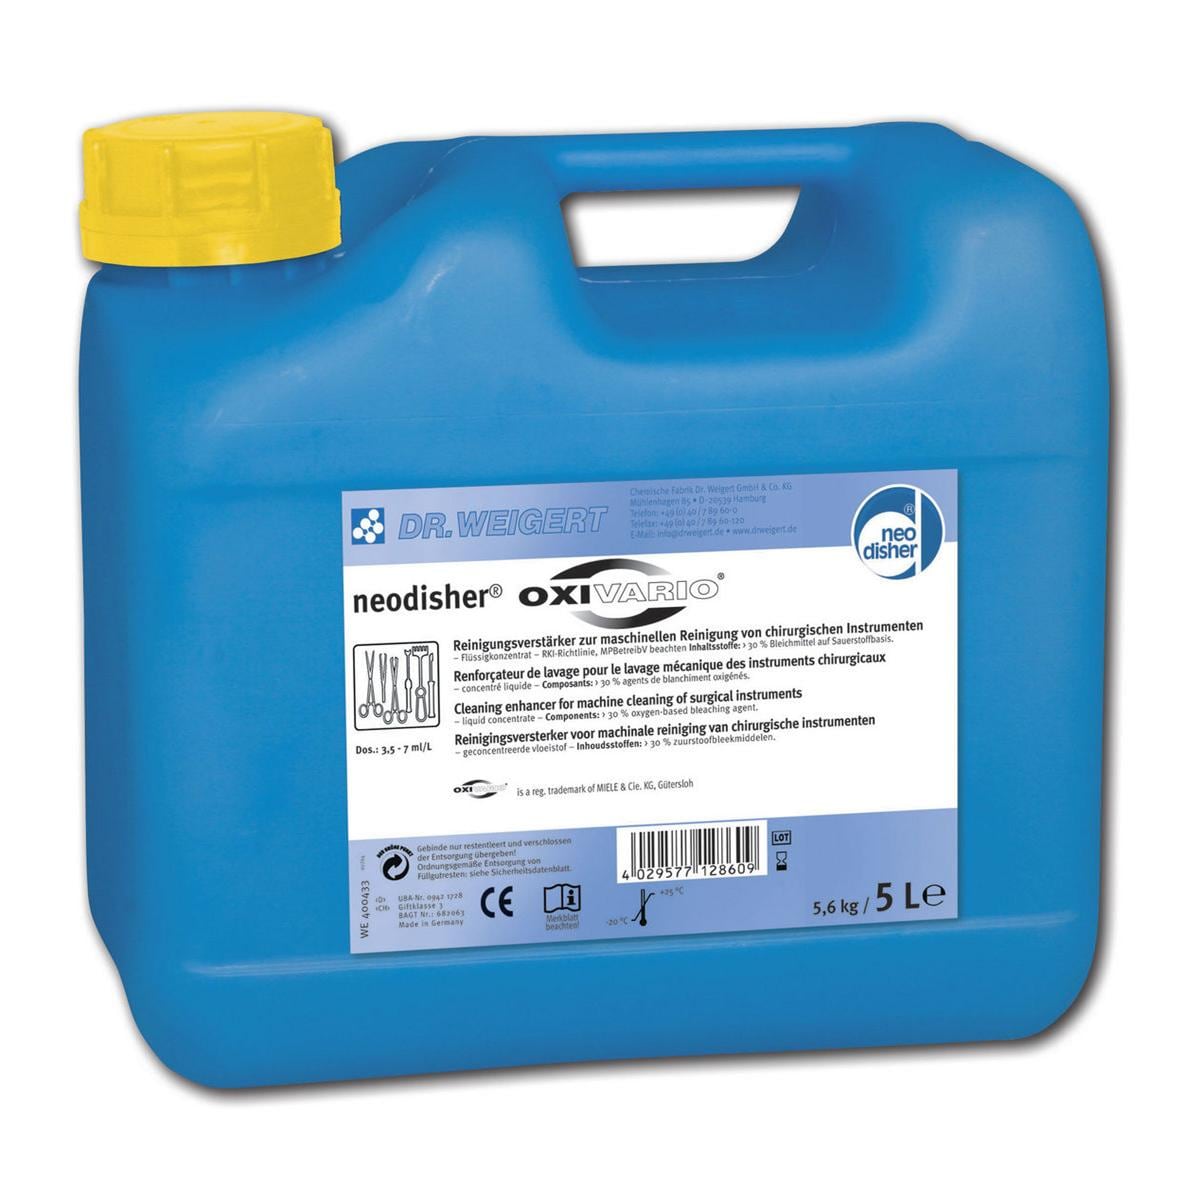 neodisher® ORTHOVARIO - Kanister 5 Liter